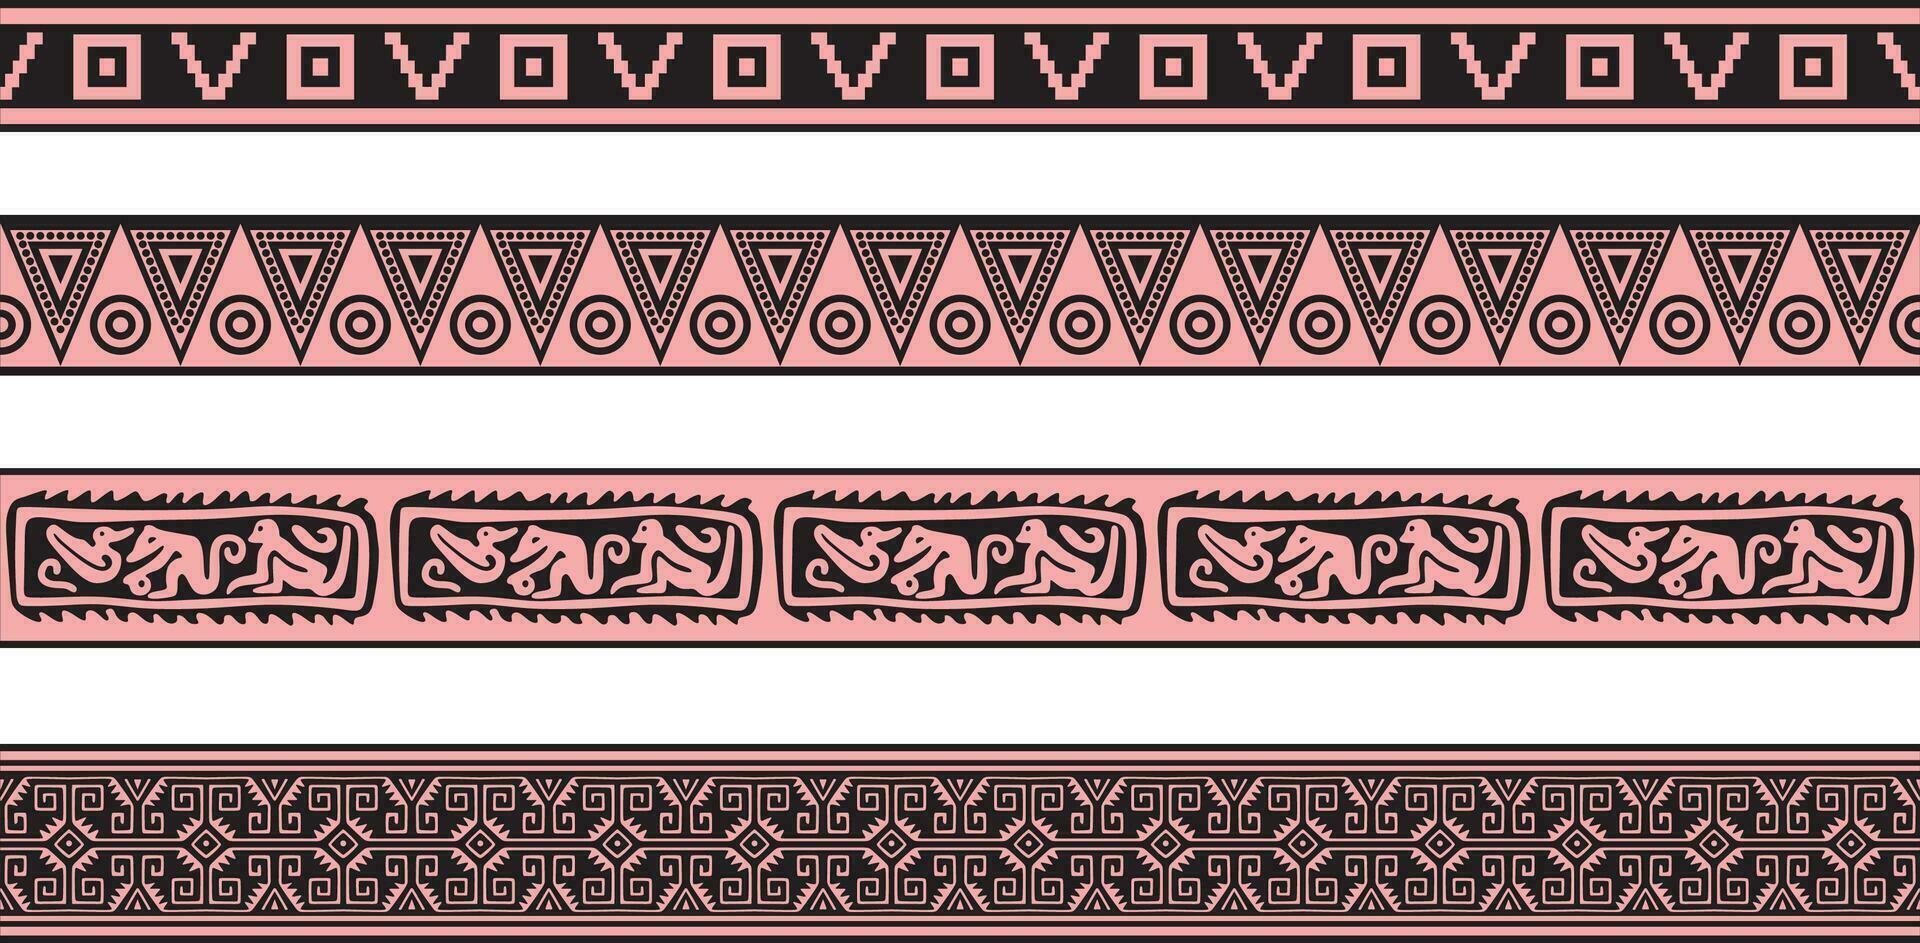 vetor conjunto do Rosa e Preto nativo americano ornamental desatado fronteiras. estrutura do a povos do América, astecas, maia, incas